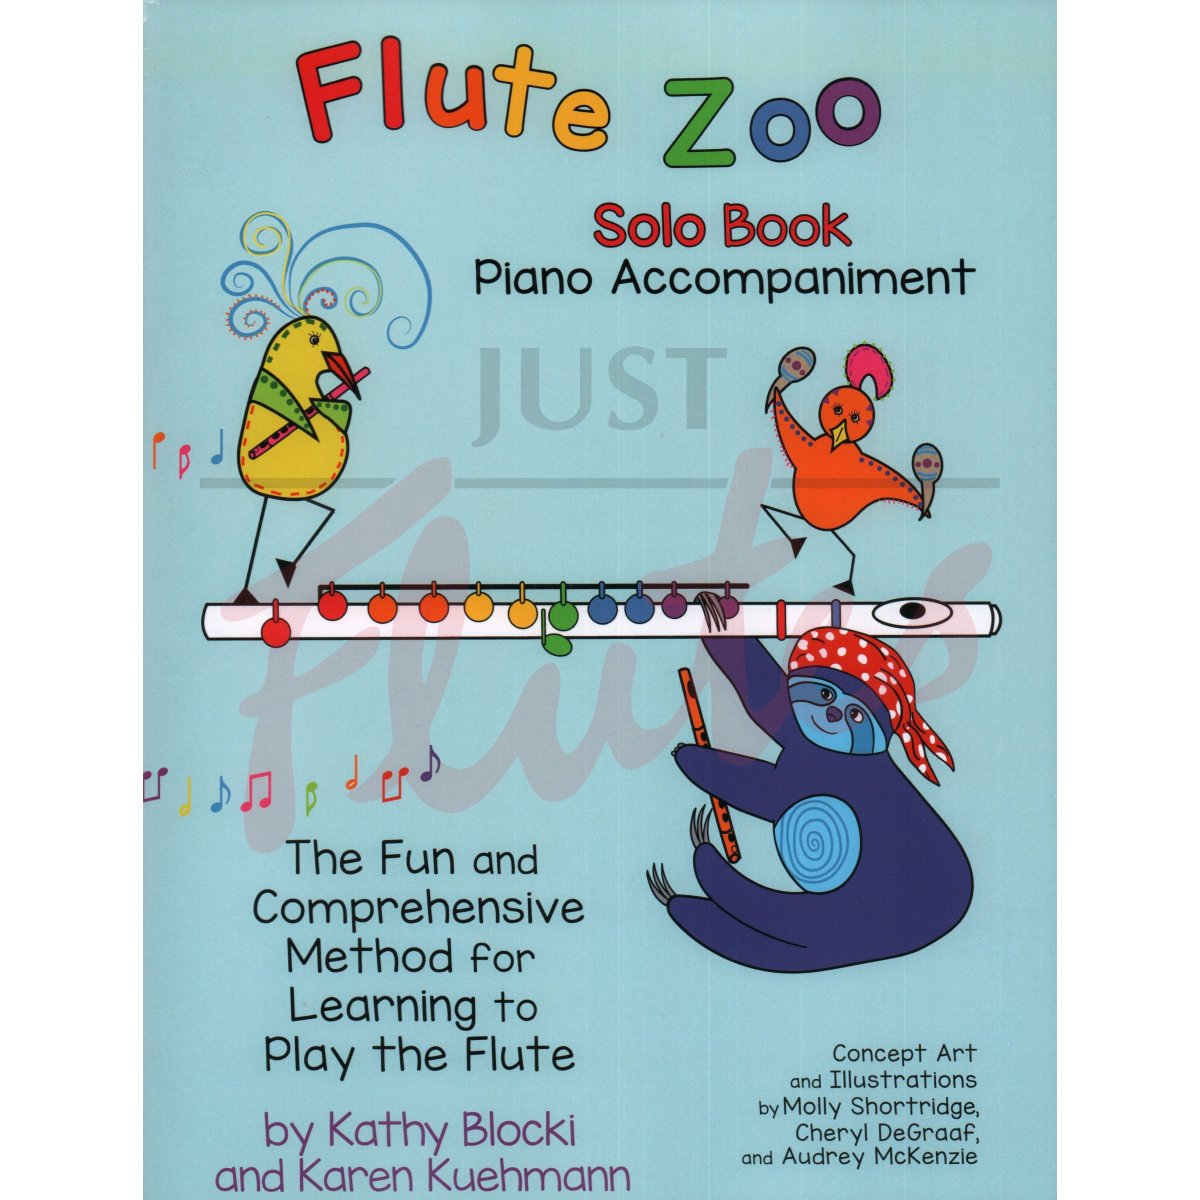 Flute Zoo Solo Book Piano Accompaniment